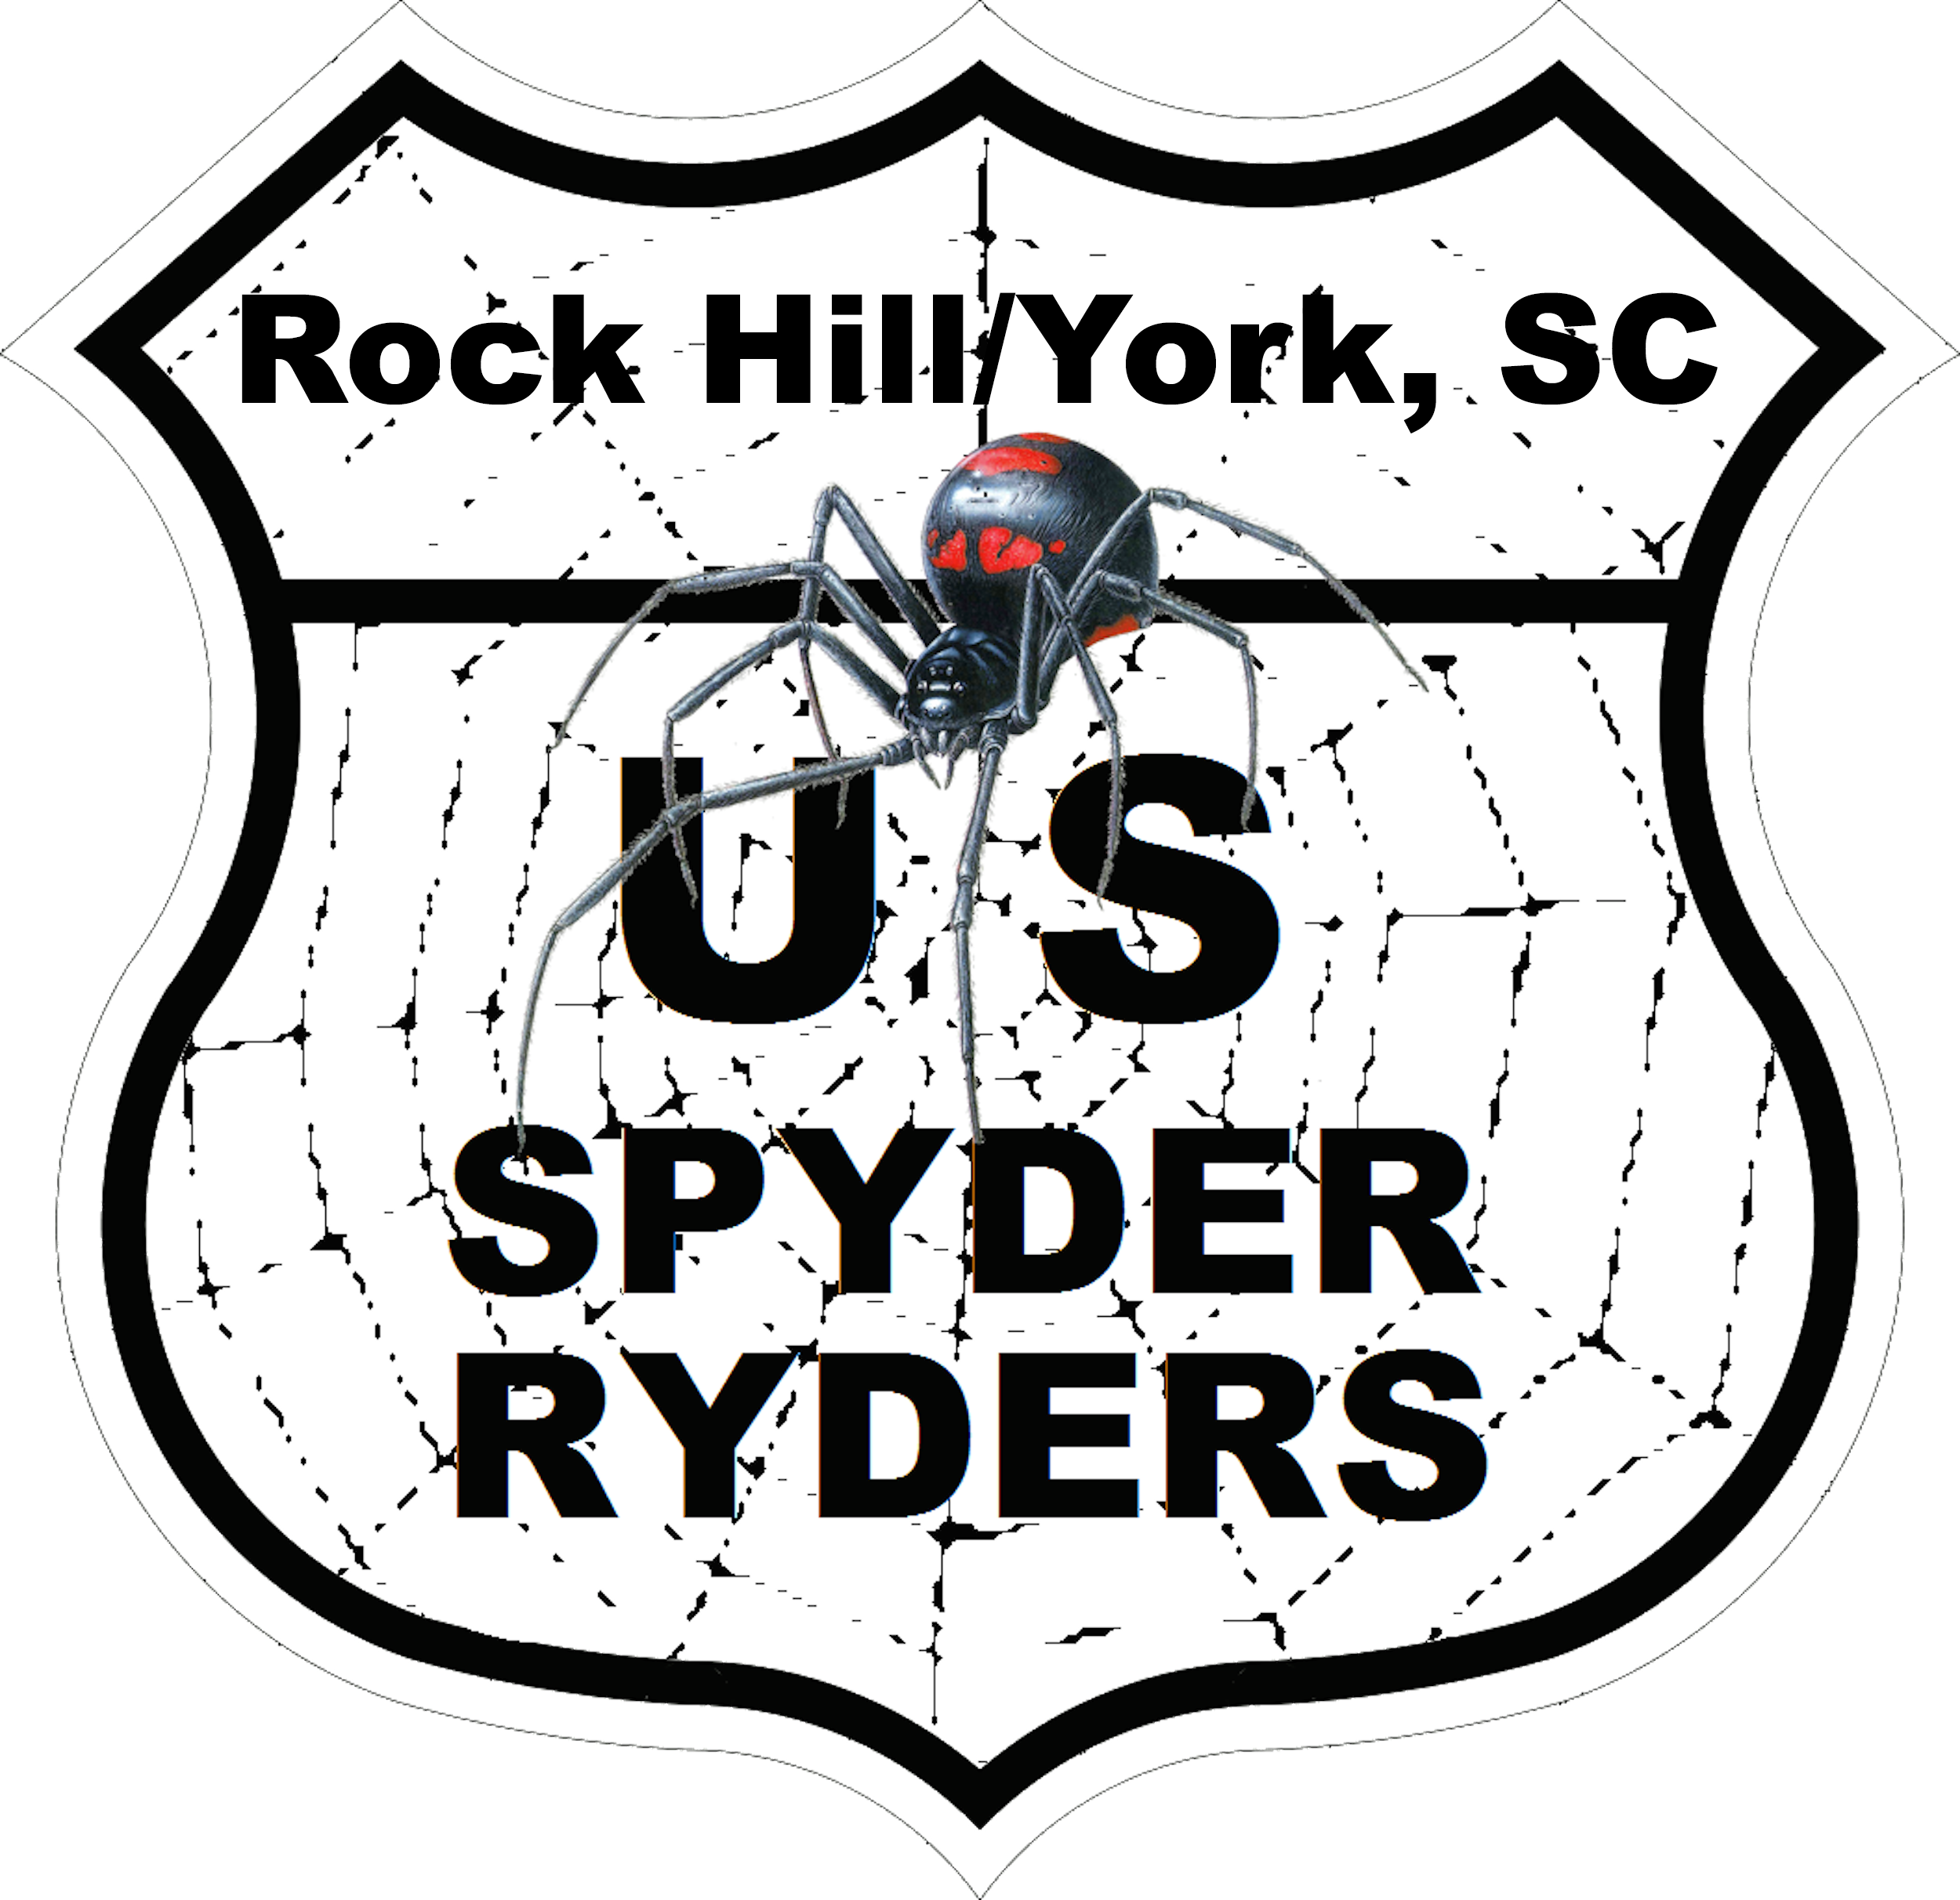 US_Spyder_Ryder_SC-Rockhill-York.png